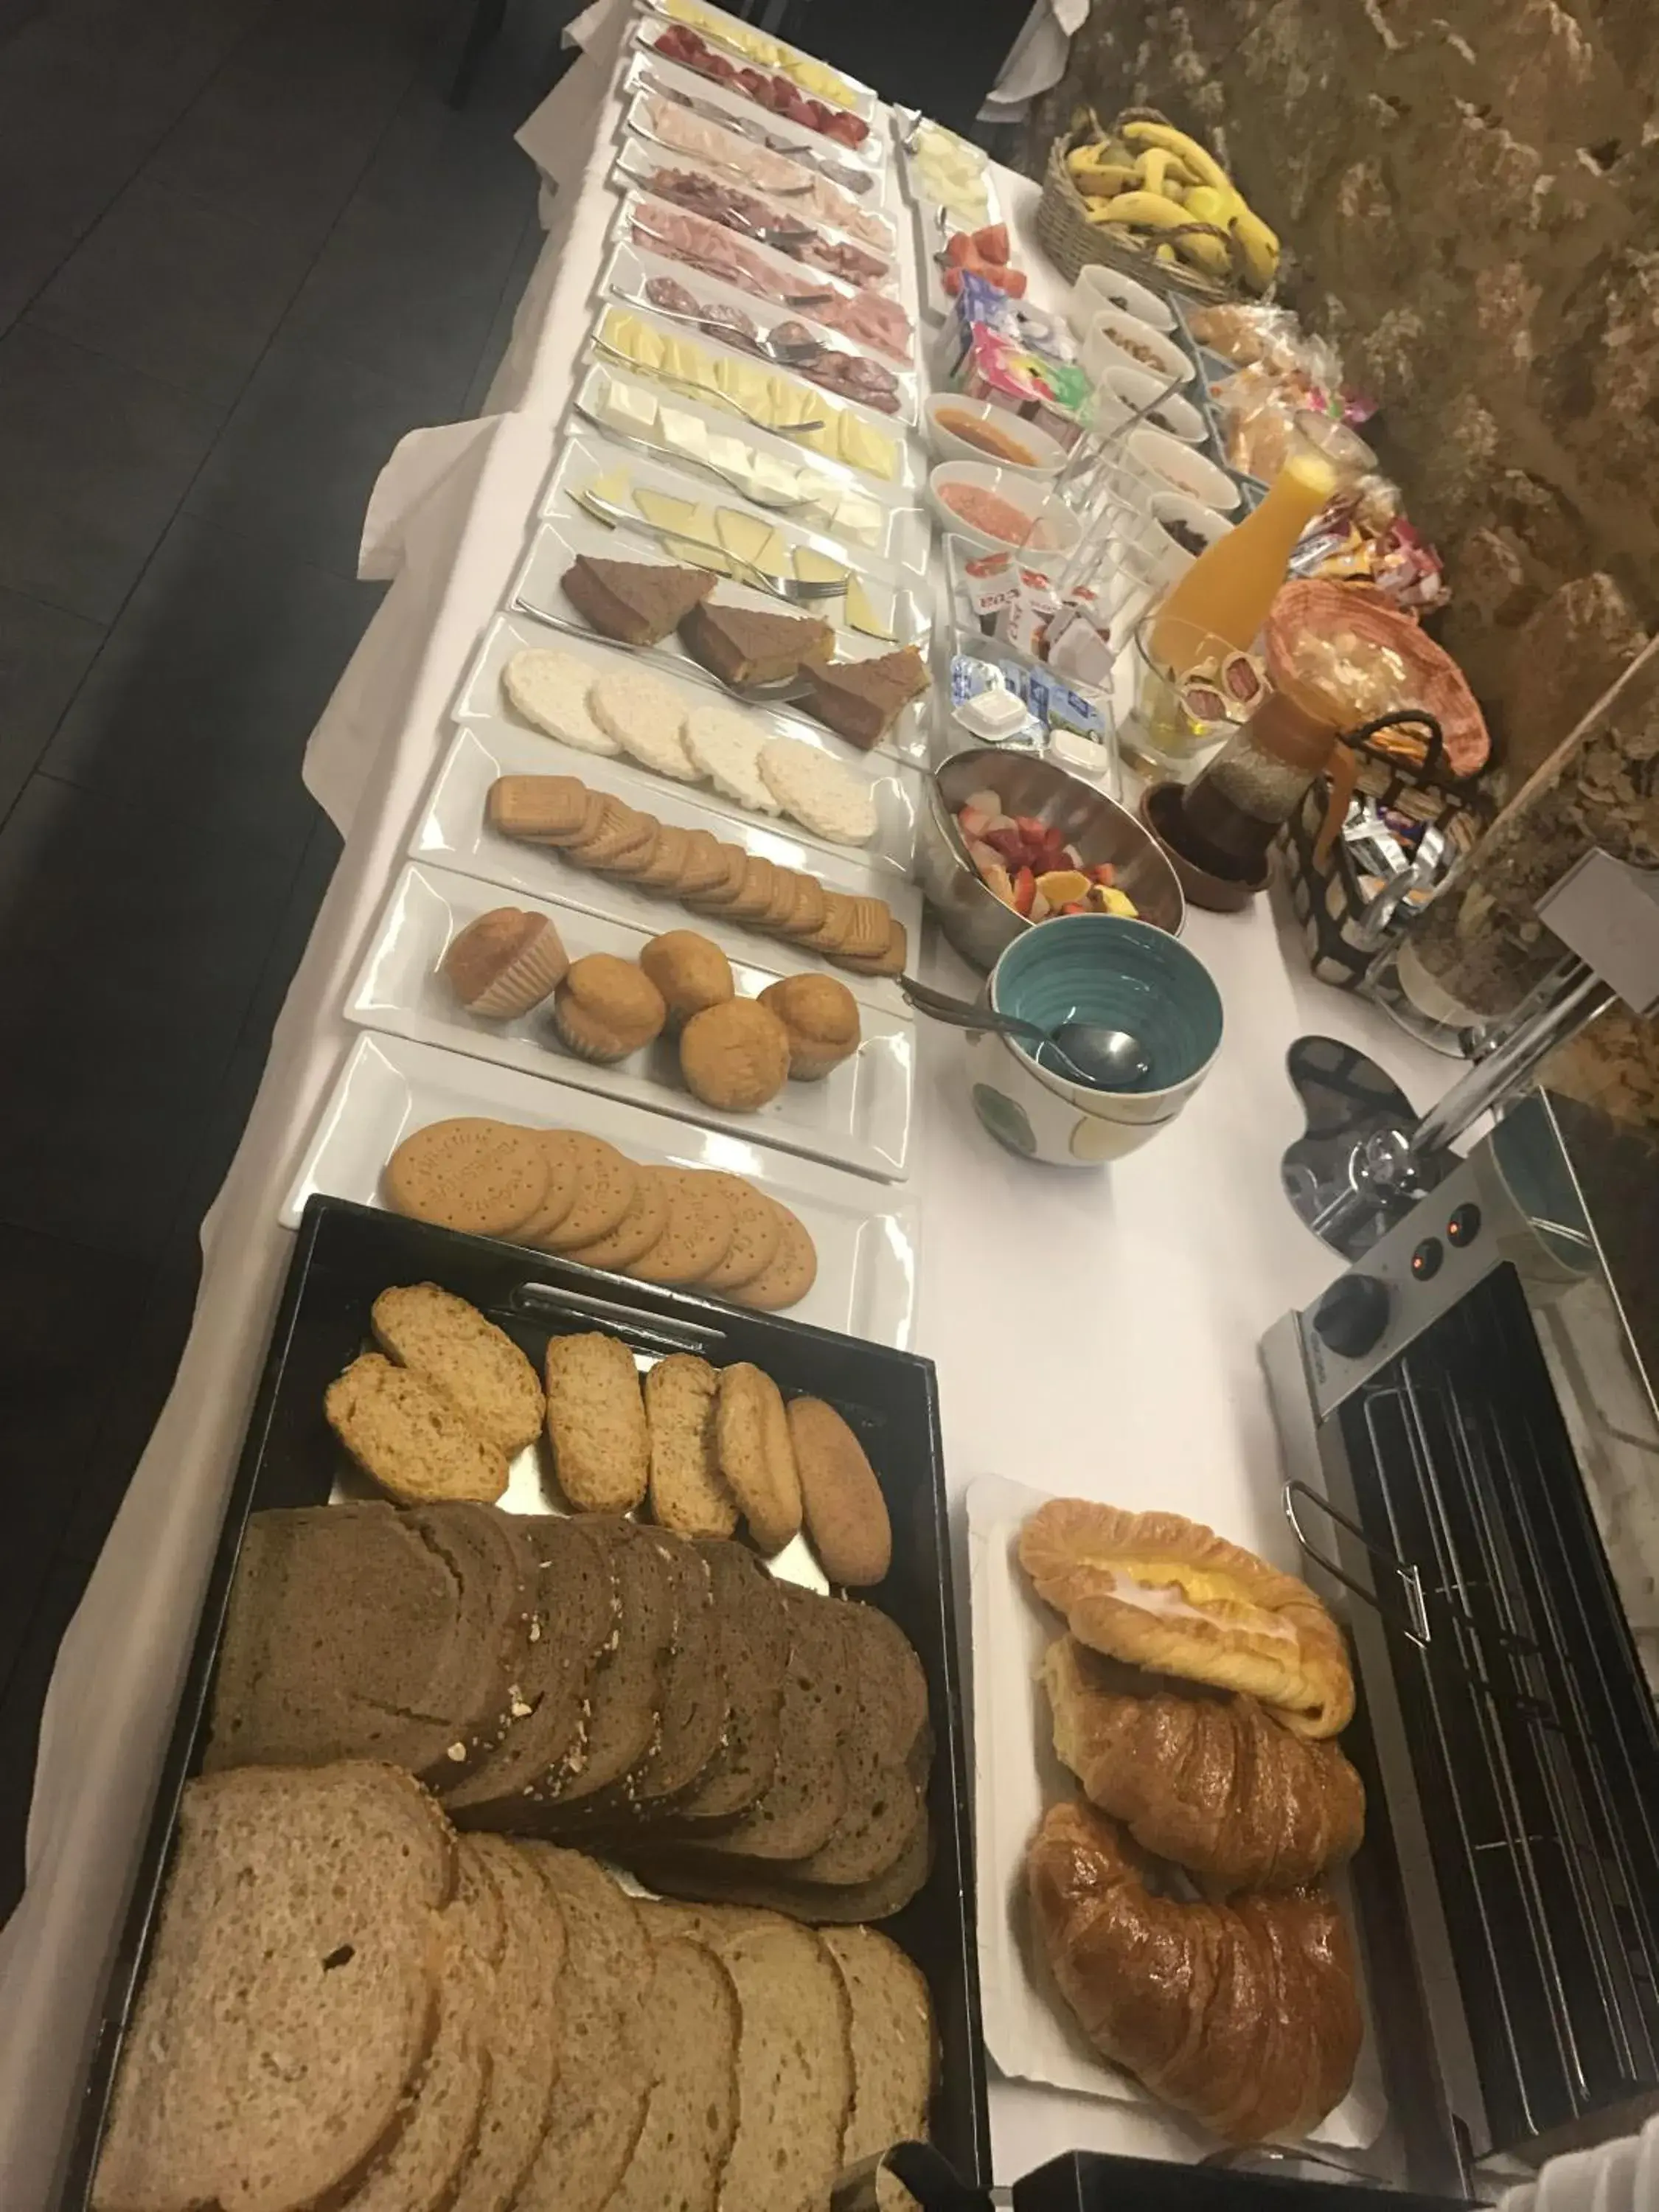 Buffet breakfast in Hotel Lois